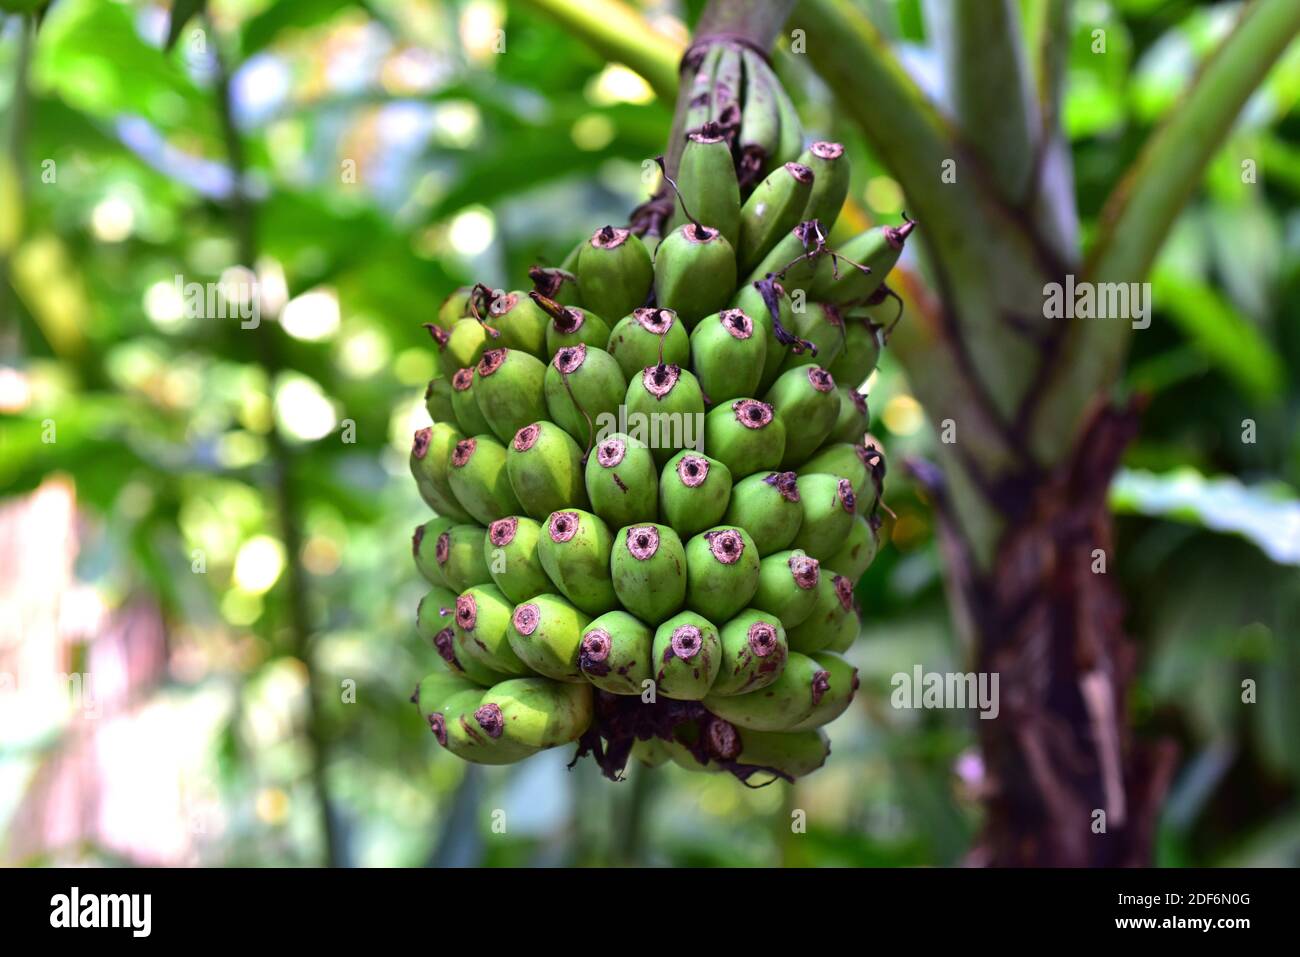 La banane malais (Musa acuminata) est une plante vivace originaire du sud-est de l'Asie. Ses fruits (détail) sont comestibles. Banque D'Images